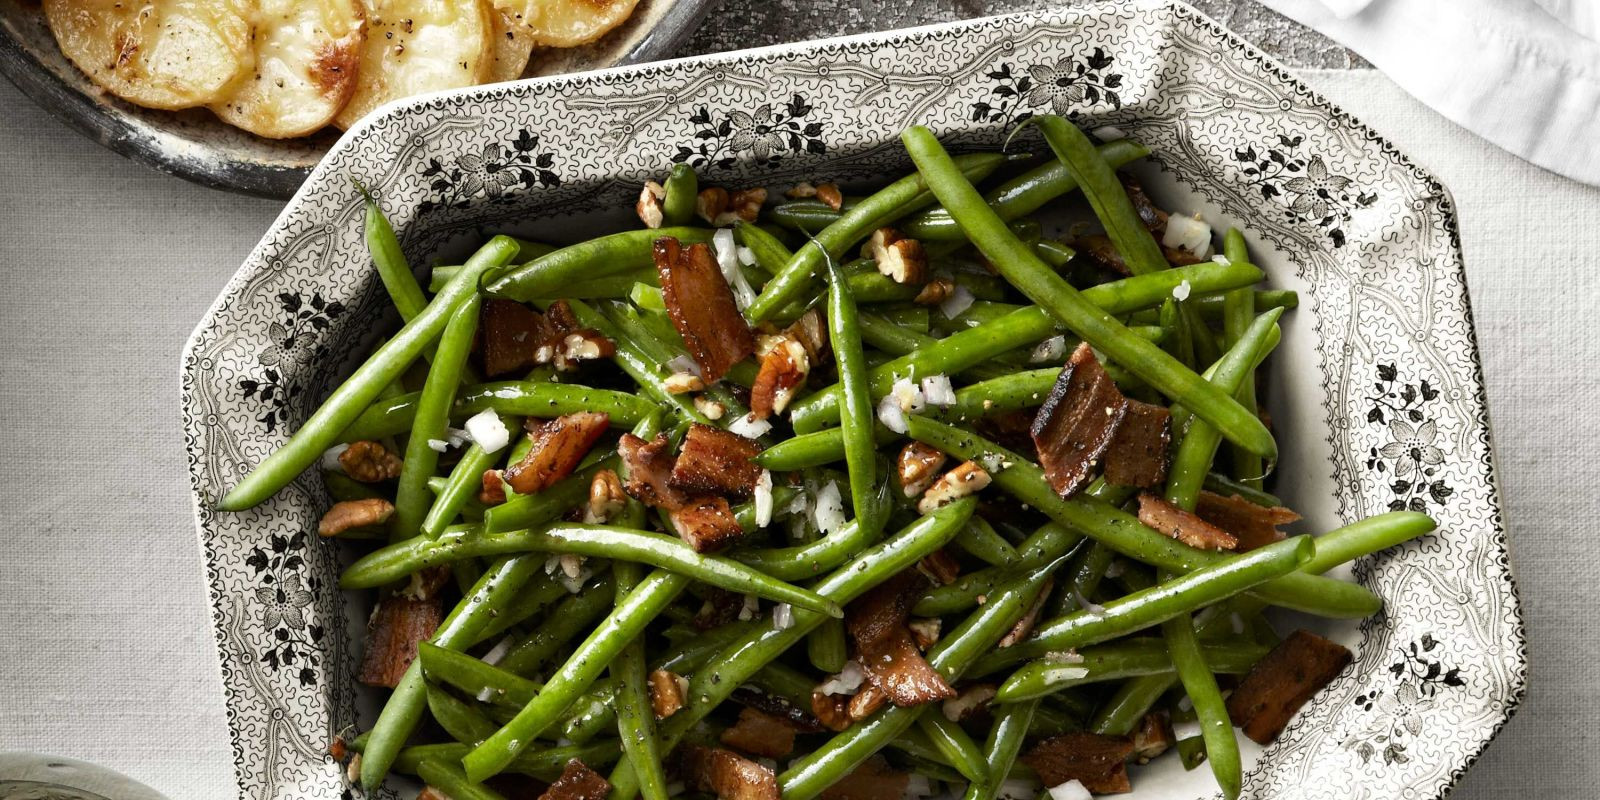 Best Green Bean Recipe For Thanksgiving
 27 Easy Green Bean Recipes for Thanksgiving How to Cook